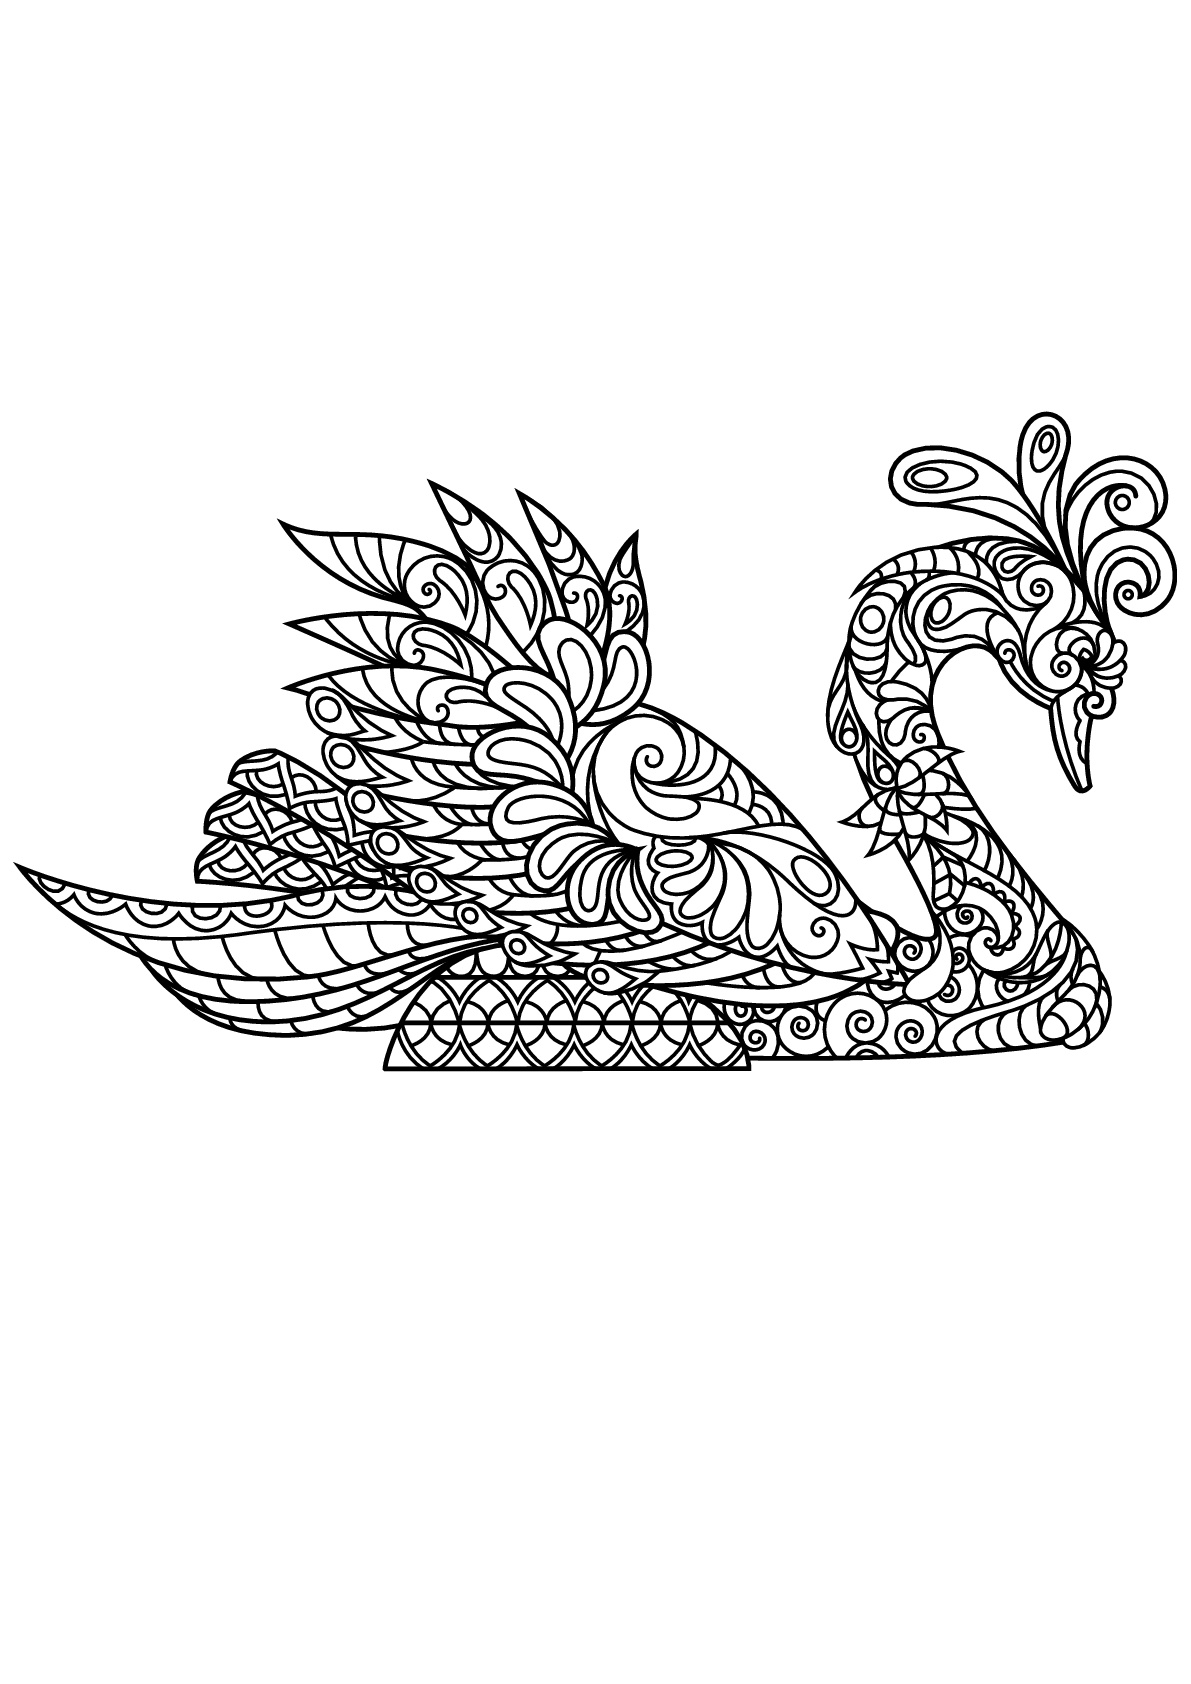 Cisne, com padrões harmoniosos e complexos